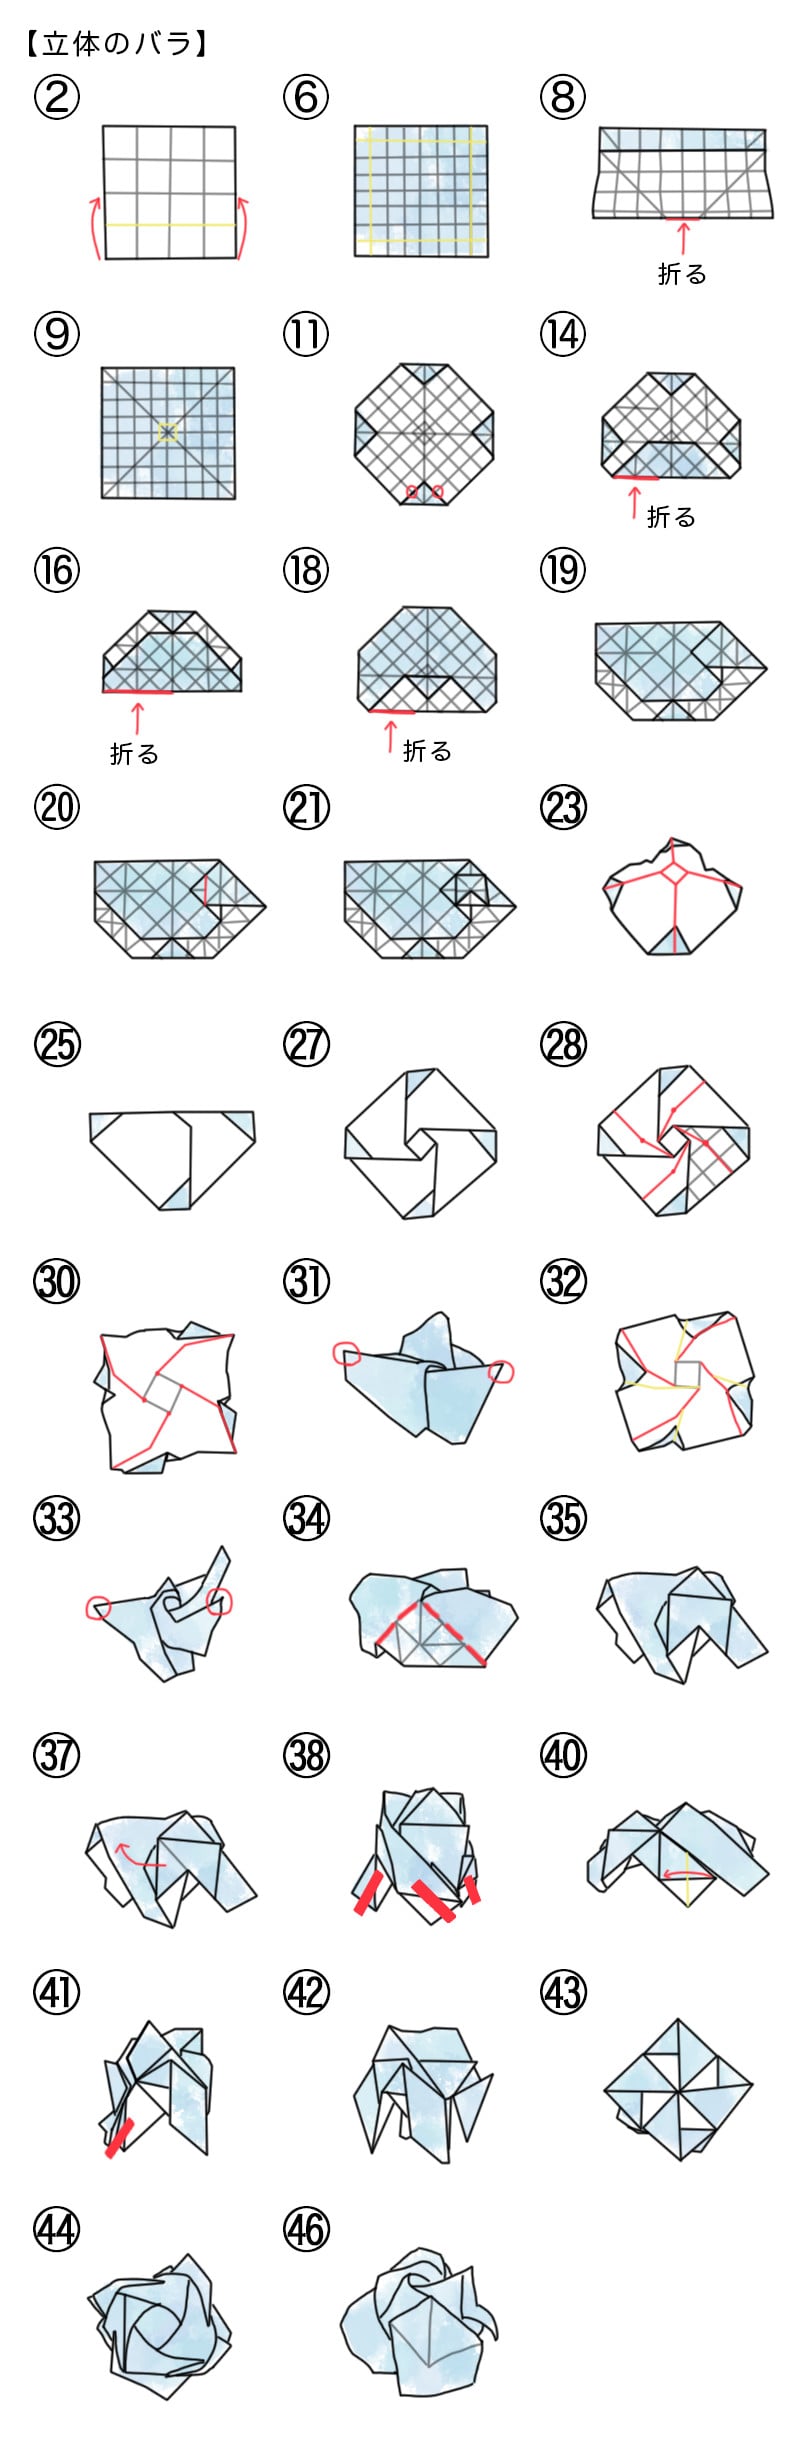 シモジマ 作ってみよう 折り紙で作るバラの折り方 包装用品 店舗用品の通販サイト